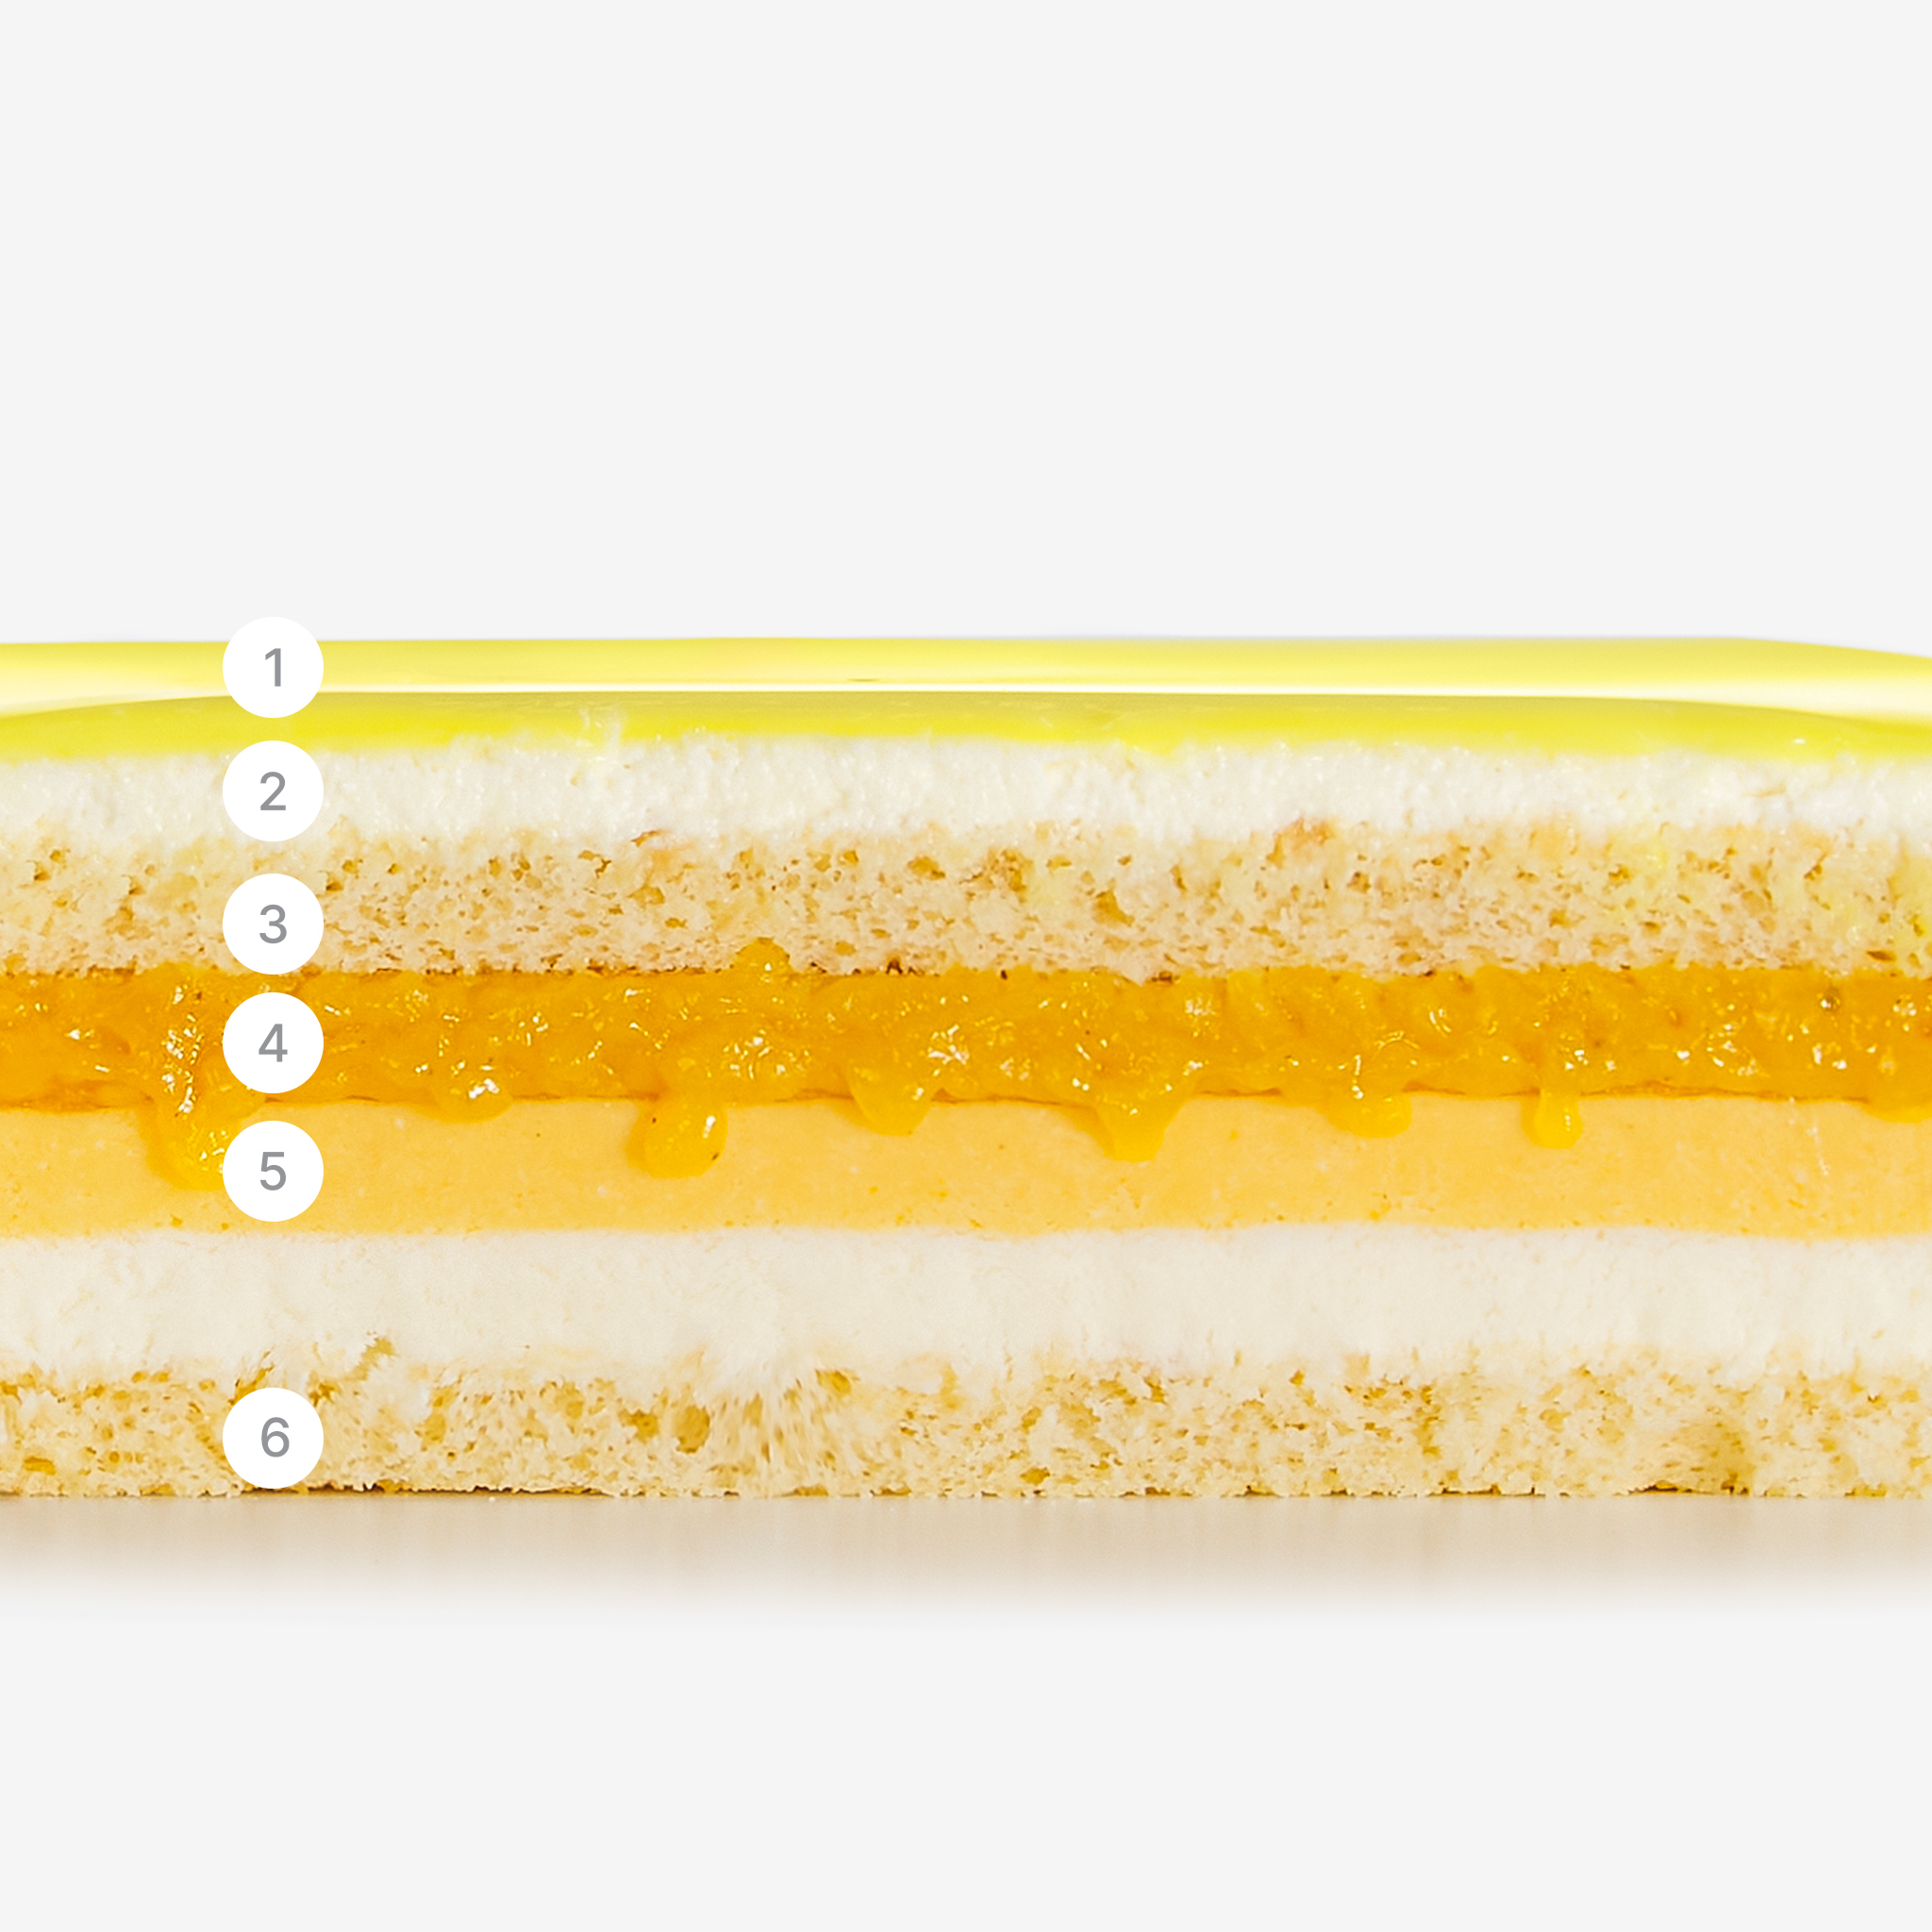 LaFuong Pastry – One Sunny Day – Dừa, Xoài & Chanh leo. Được làm từ dừa non, xoài và chanh leo, One Sunny Day luôn là vị bánh được lòng tất cả mọi người. Lớp mousse dừa thơm ngậy, kem chanh leo chua nhẹ, lớp mứt xoài nấu tay kết hợp với bạt bánh dừa xốp mềm; cùng tạo hình được phủ bởi lớp tráng gương màu vàng rực rỡ như những ngày nắng đẹp trời, One Sunny Day là chiếc bánh tràn ngập hương vị của vùng nhiệt đới. 